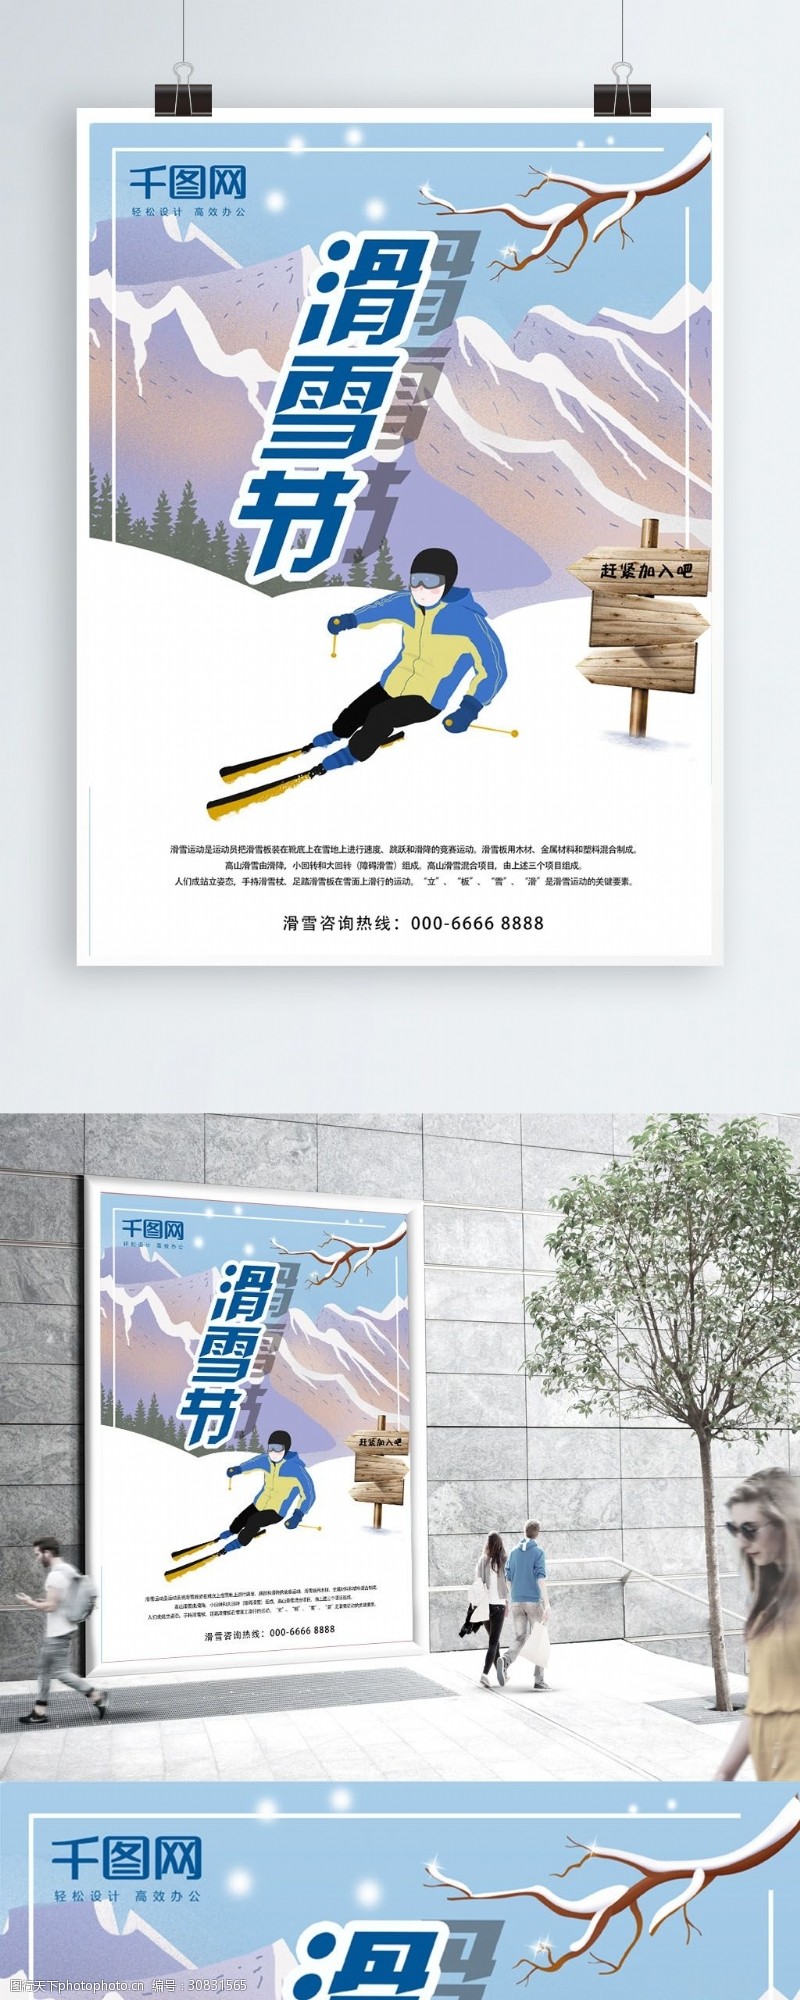 卡通雪地原创滑雪节卡通风格海报